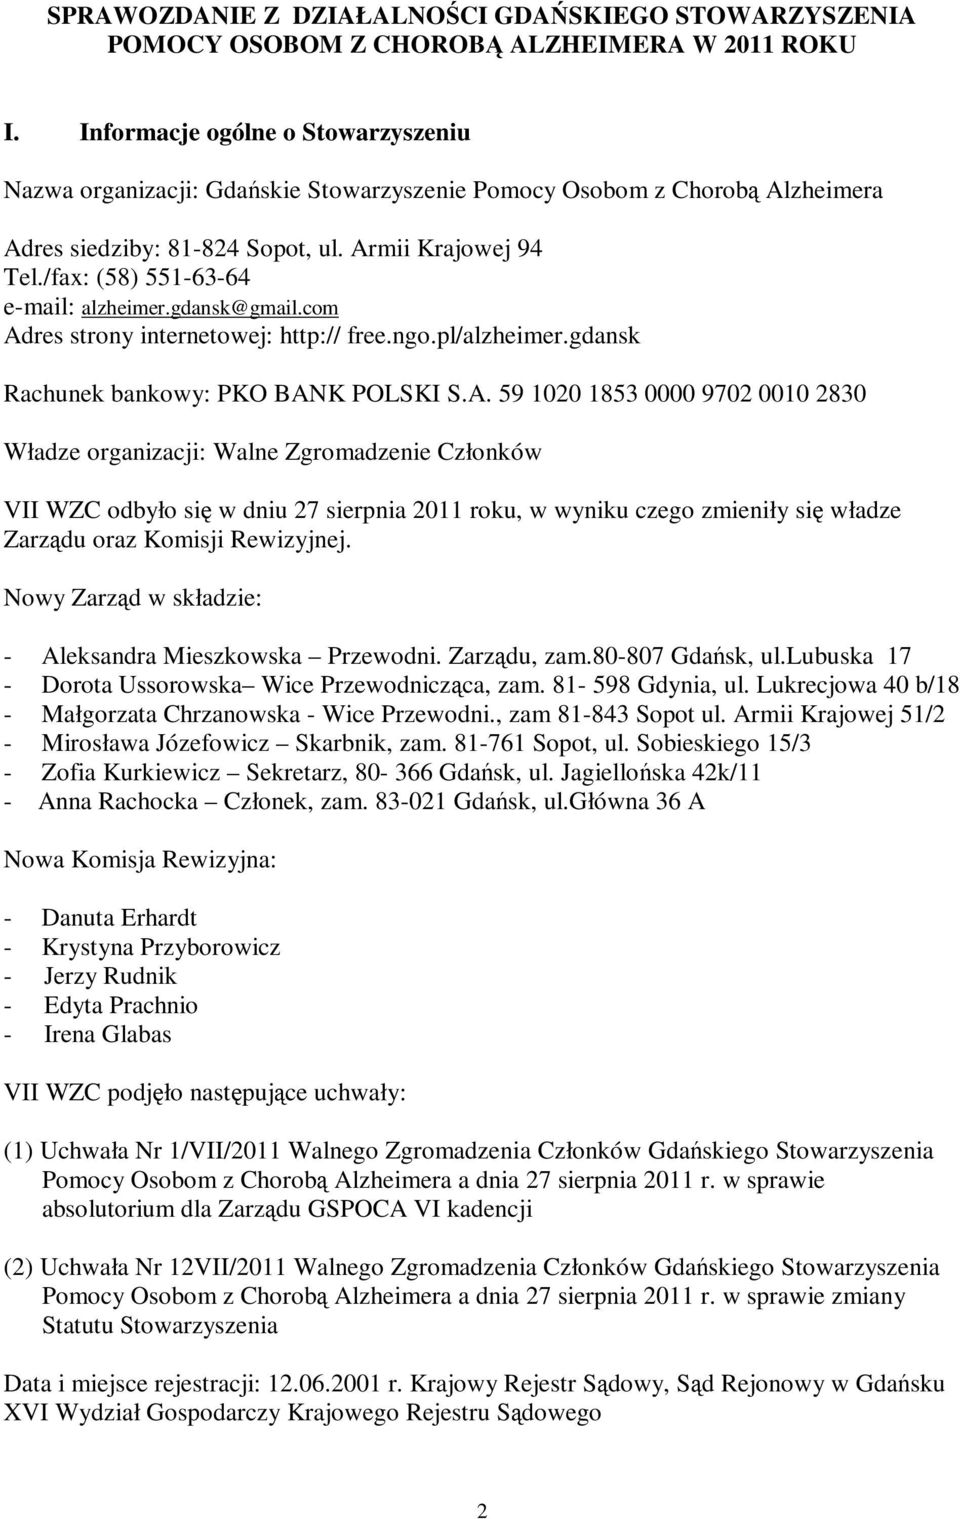 /fax: (58) 551-63-64 e-mail: alzheimer.gdansk@gmail.com Ad